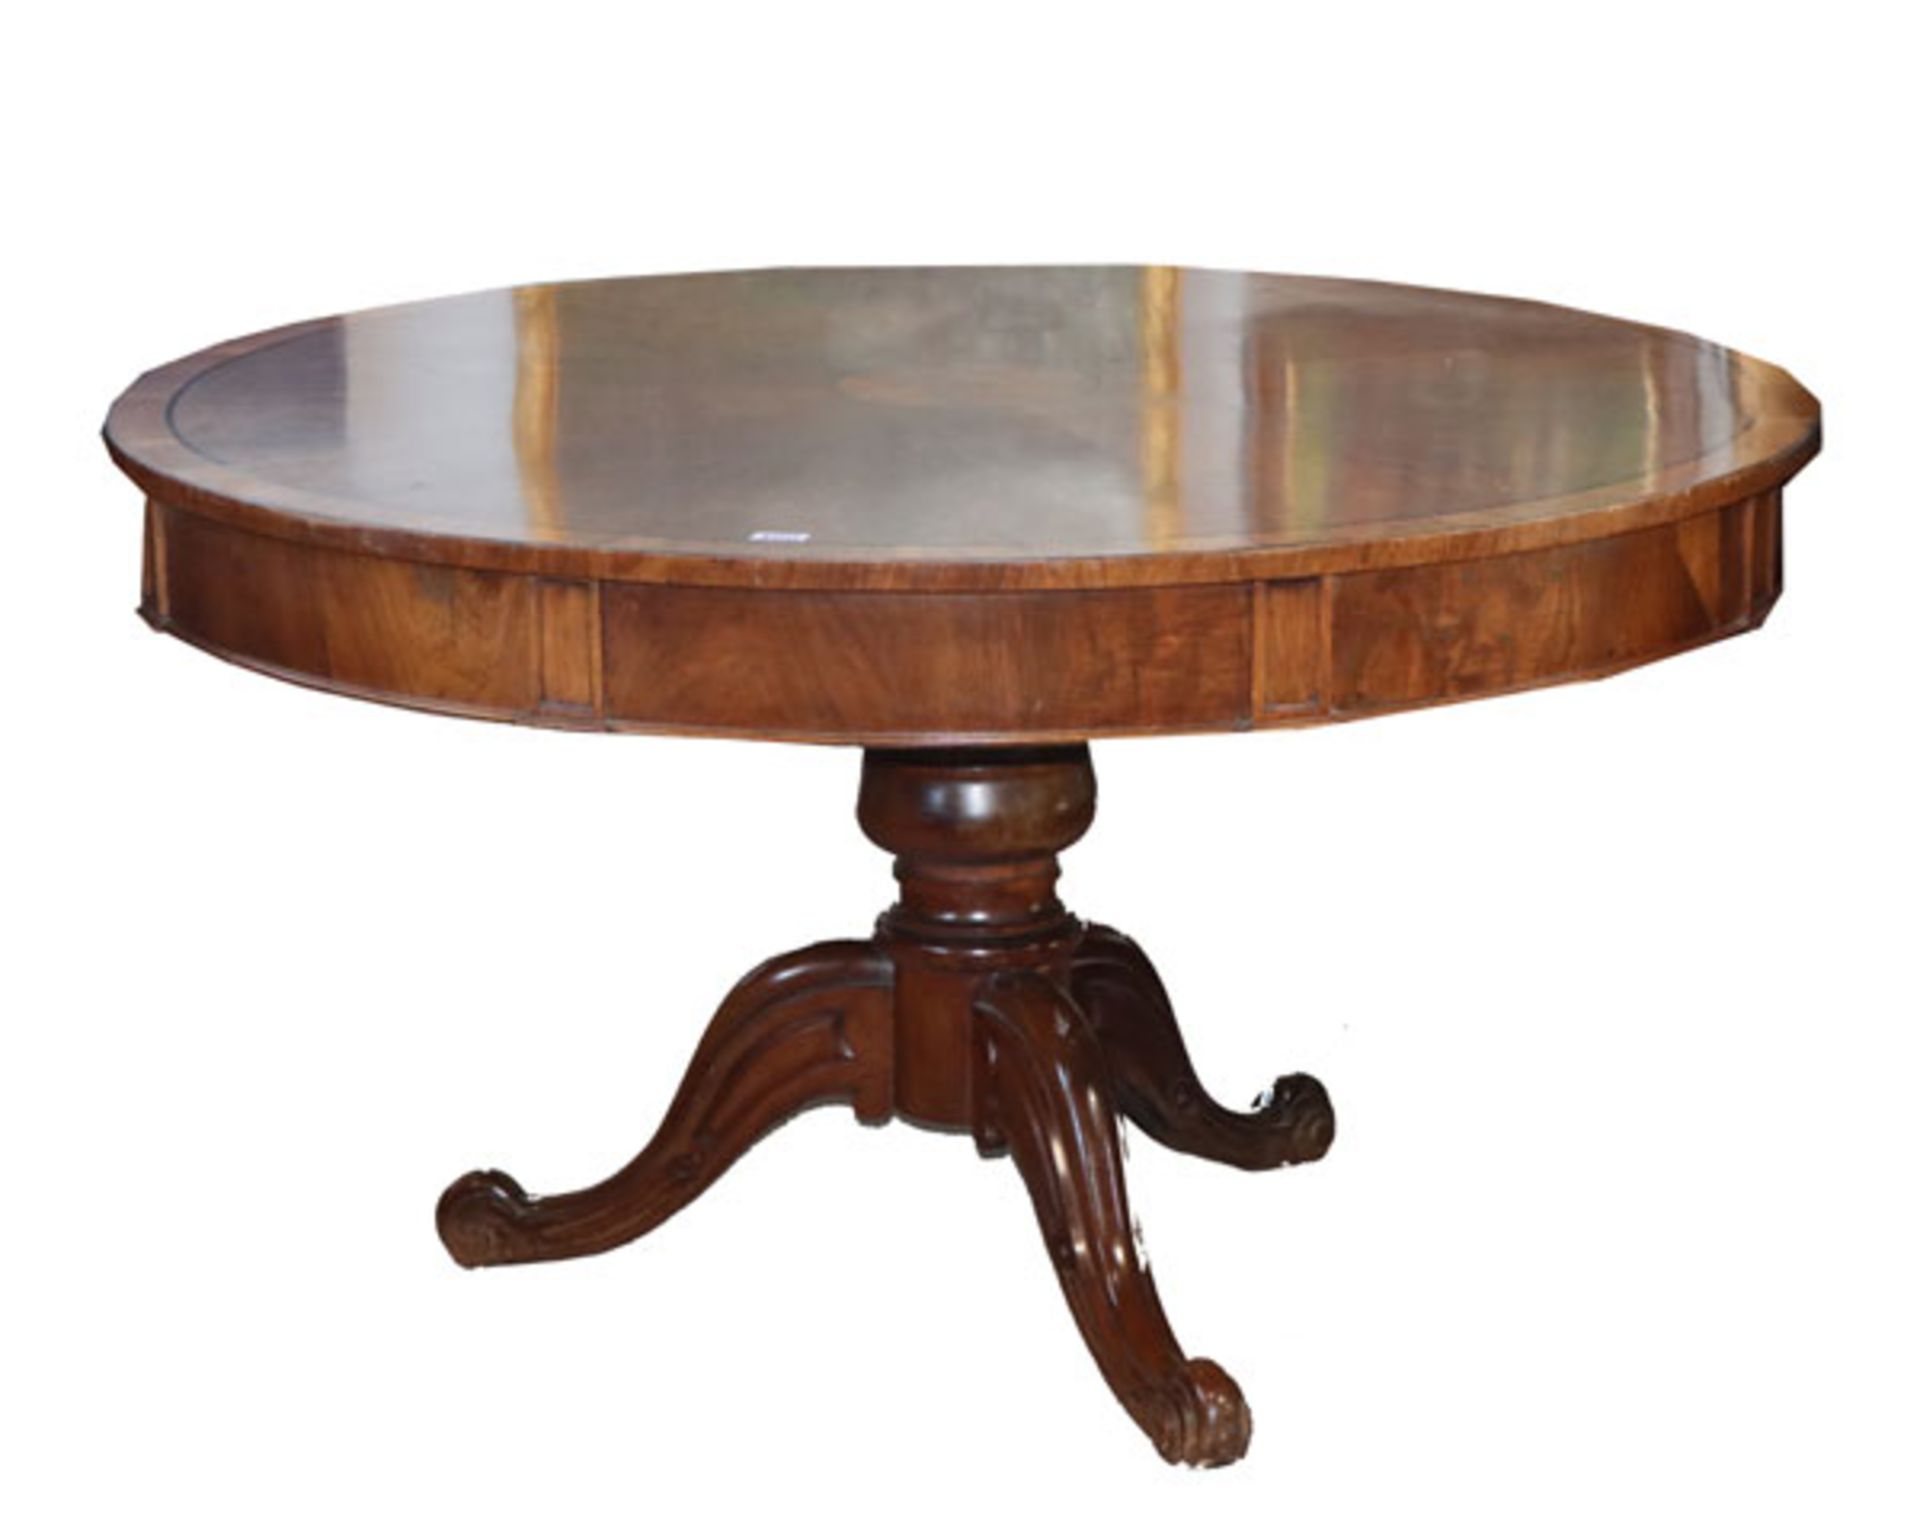 Runder Tisch auf gedrechseltem Mittelfuß mit 3 Beinen, 19. Jahrhundert, H 76 cm, D 138 cm, Alters-